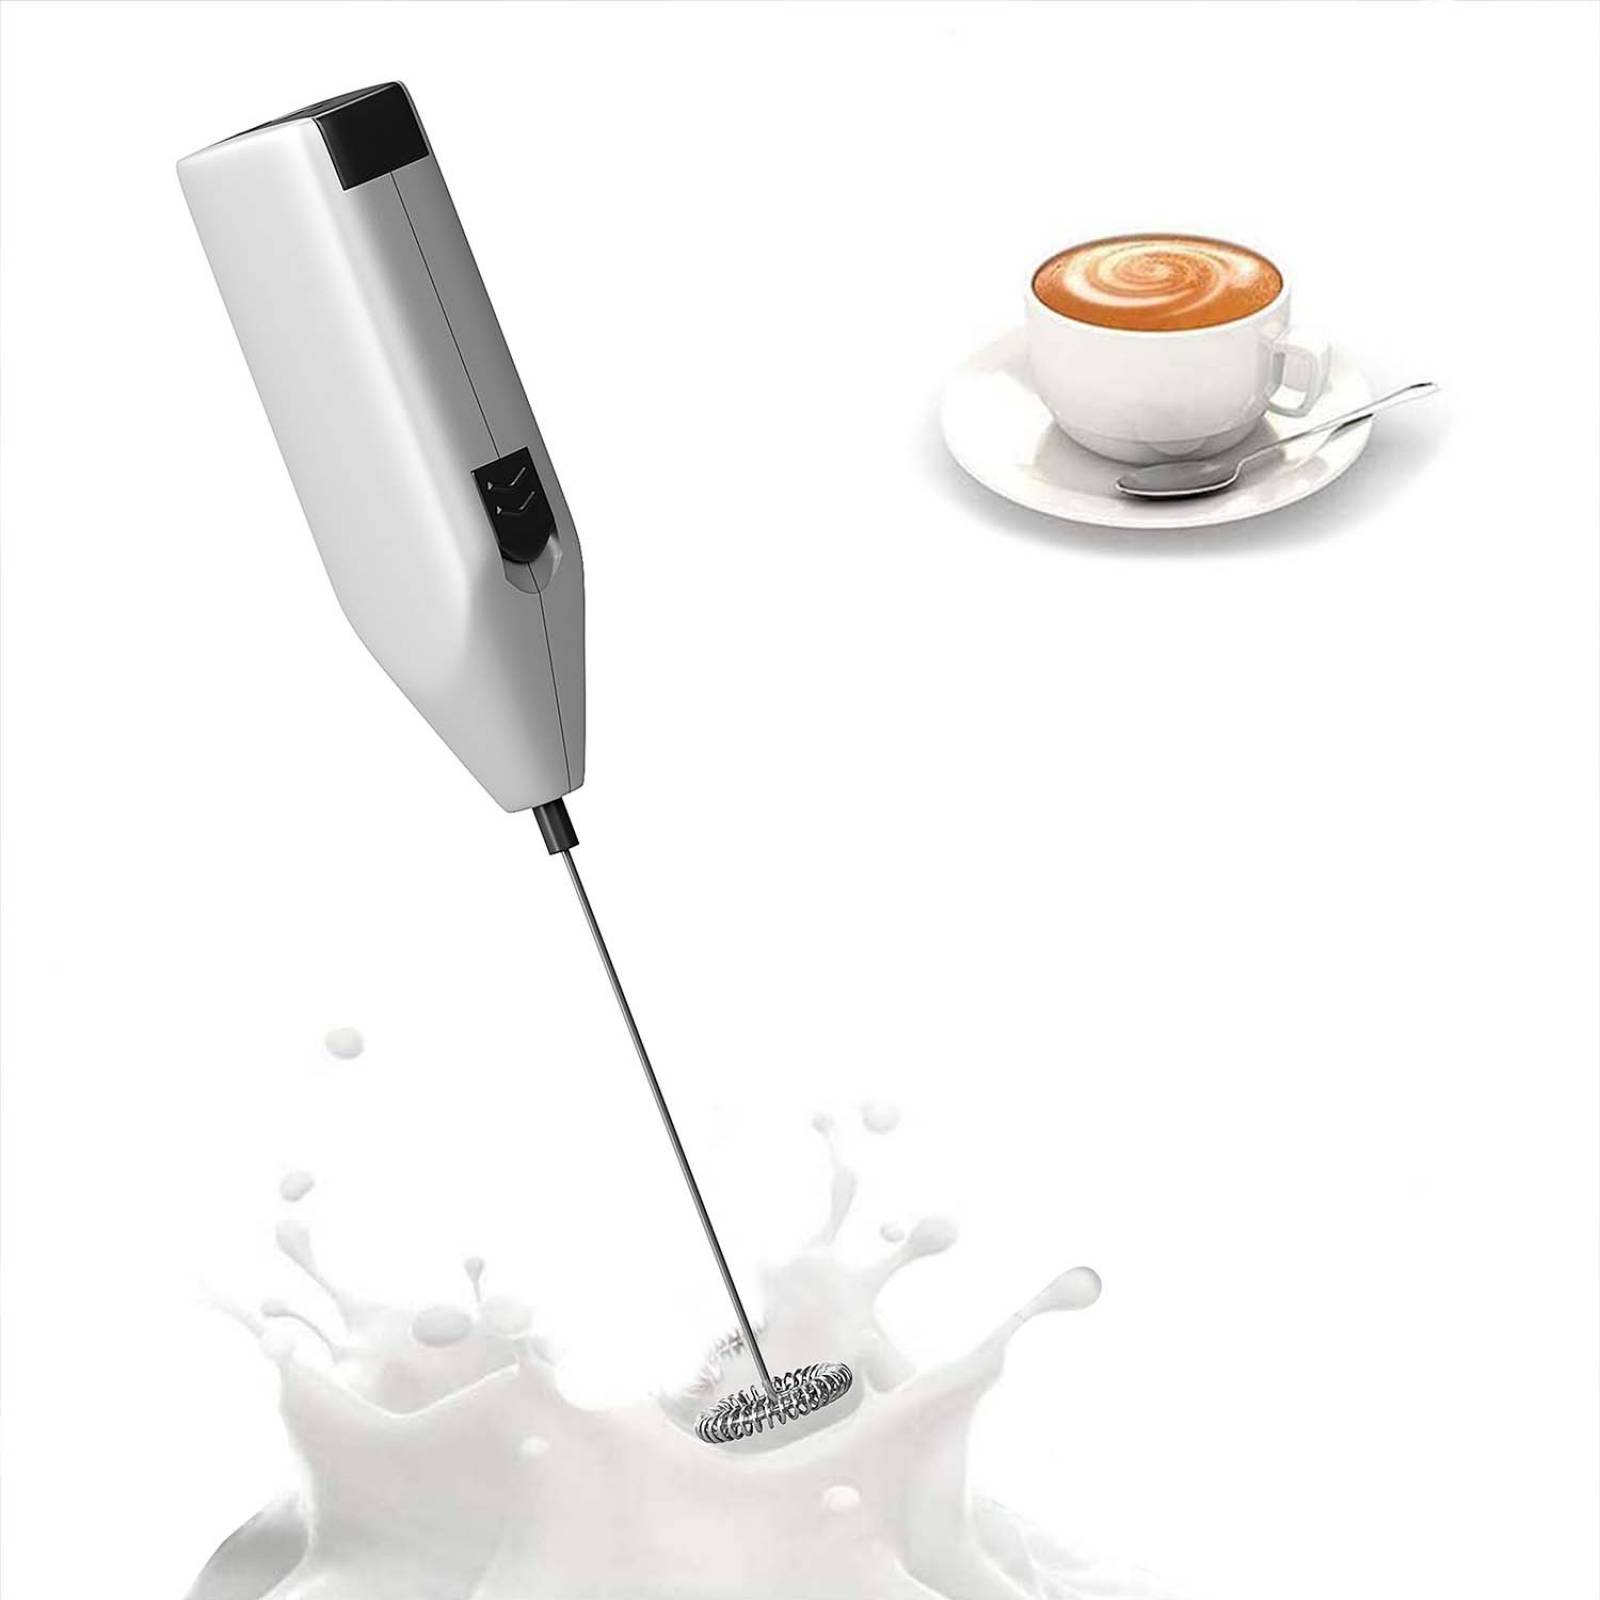 Espumador de leche de mano, Batidor de bebidas para café, batidor de espuma  para café y leche, batidor de mano por pilas para café, leche y huevo.